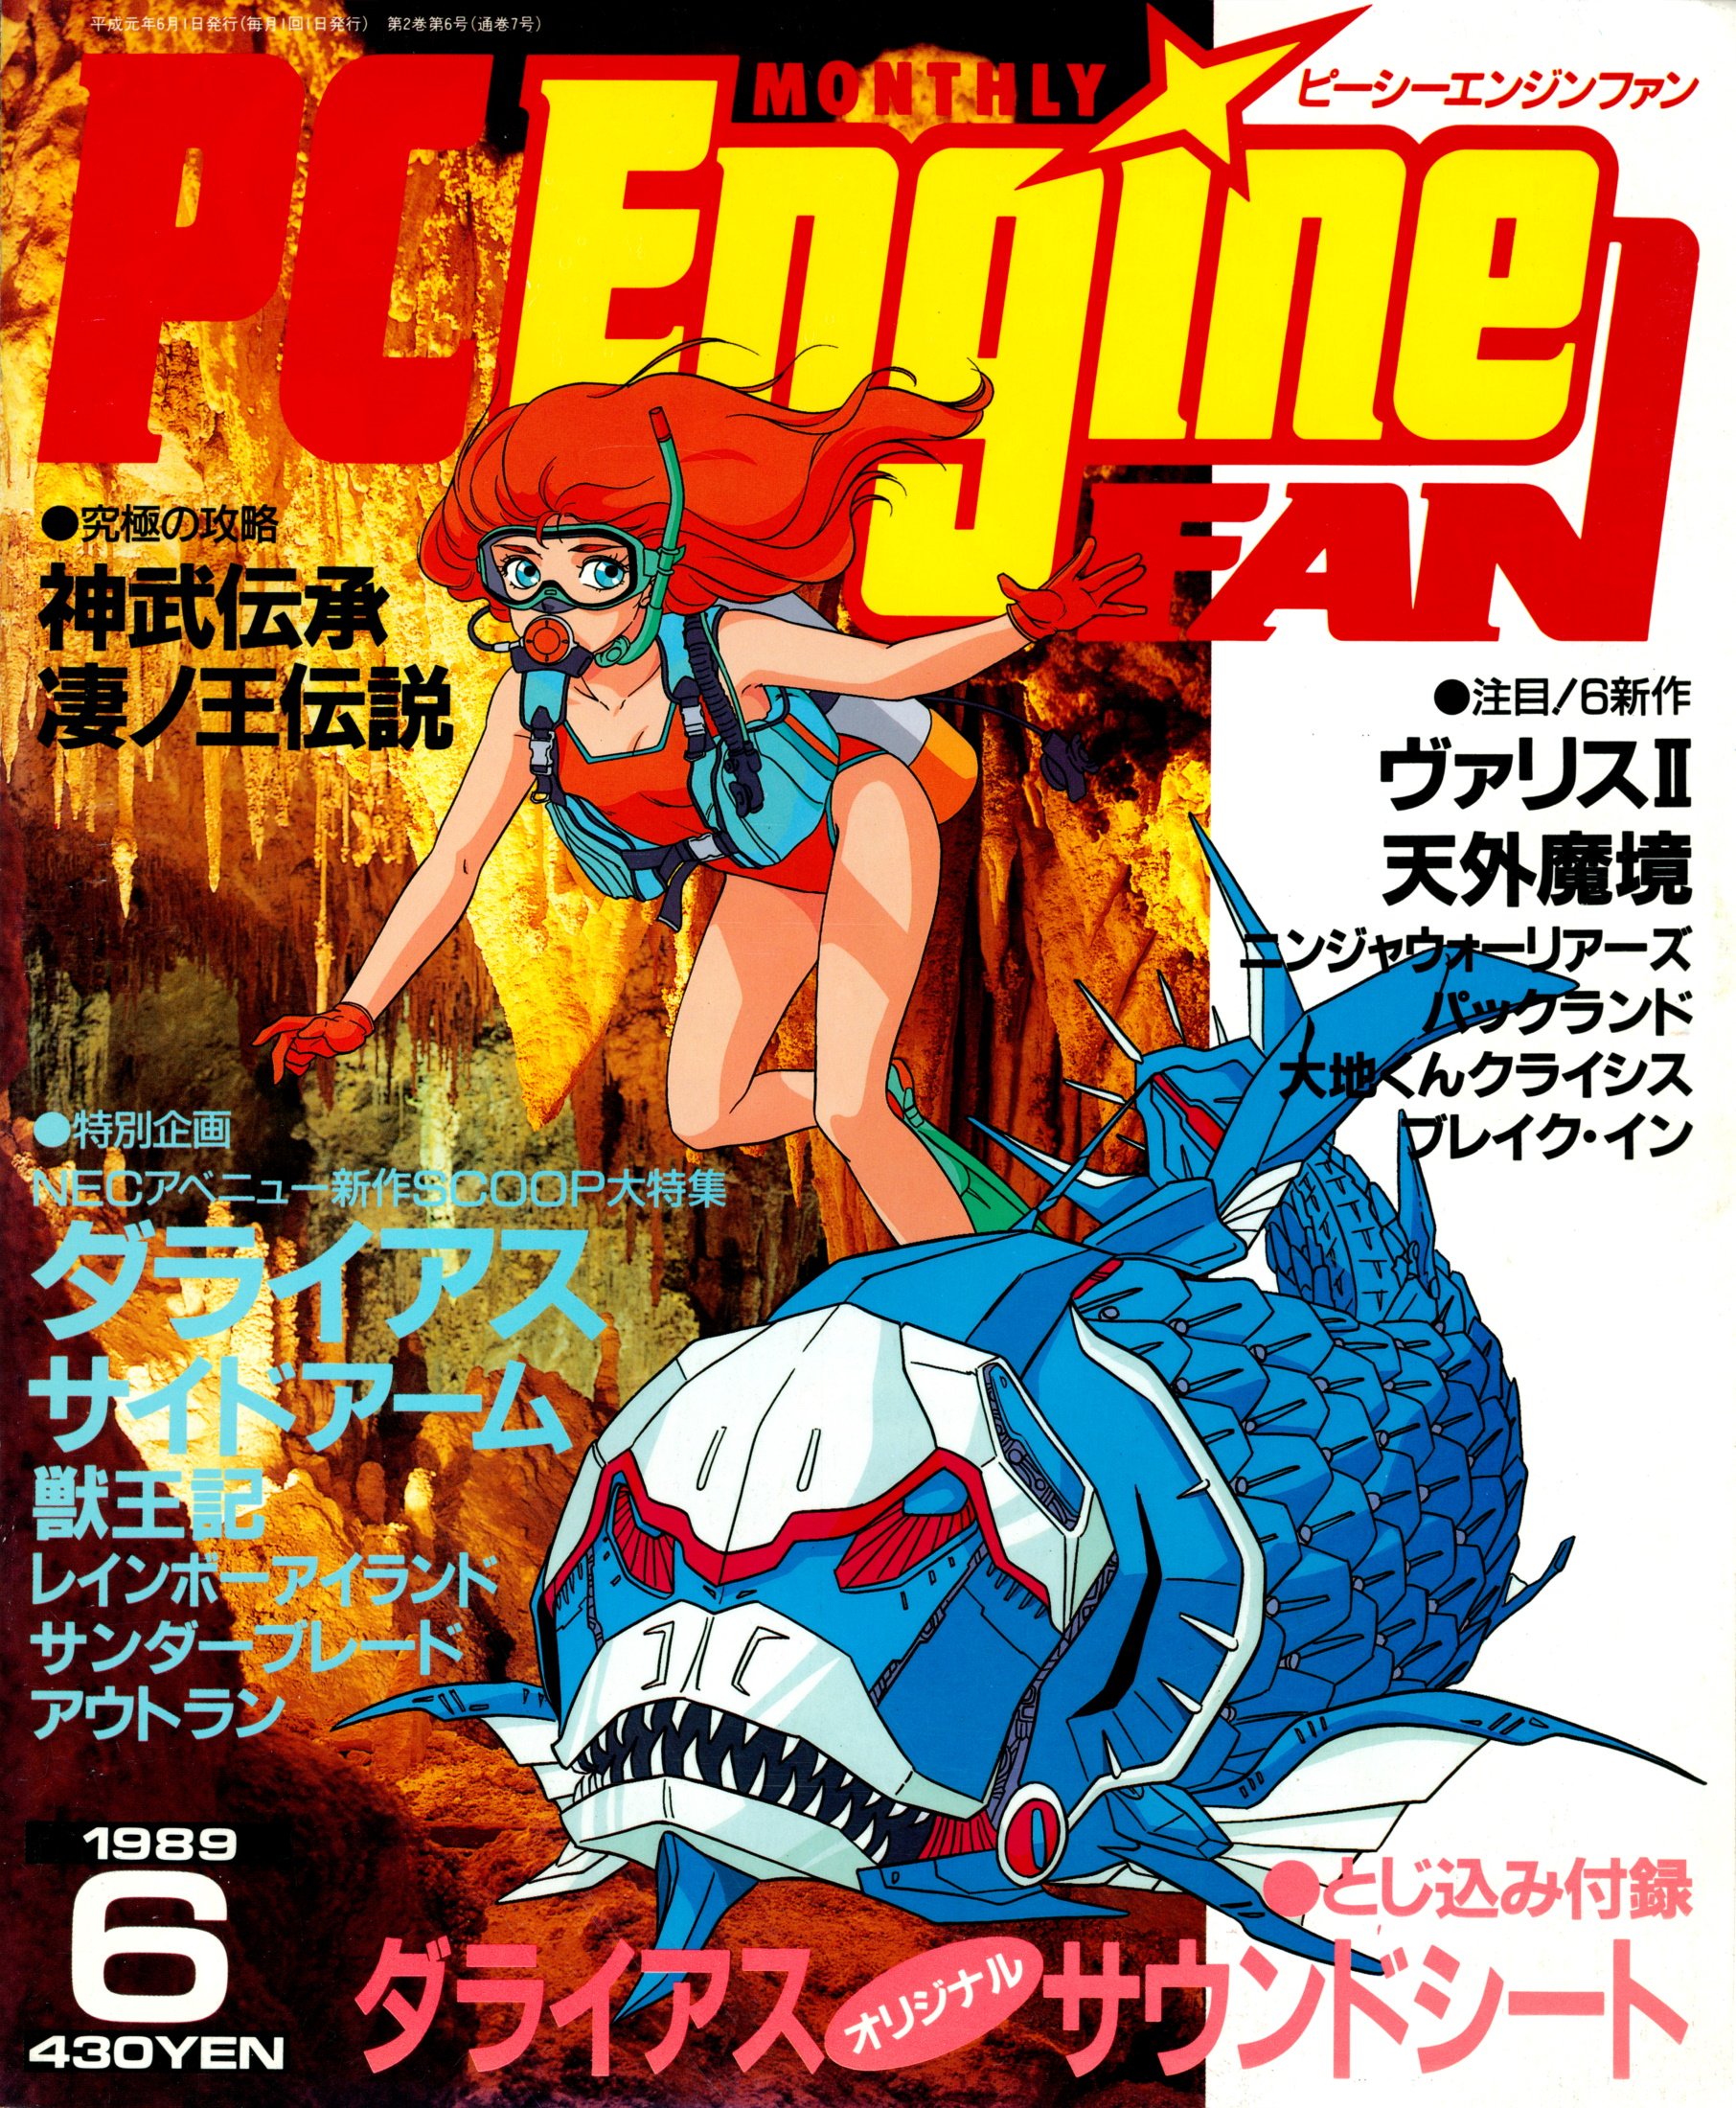 PC Engine Fan (June 1989)